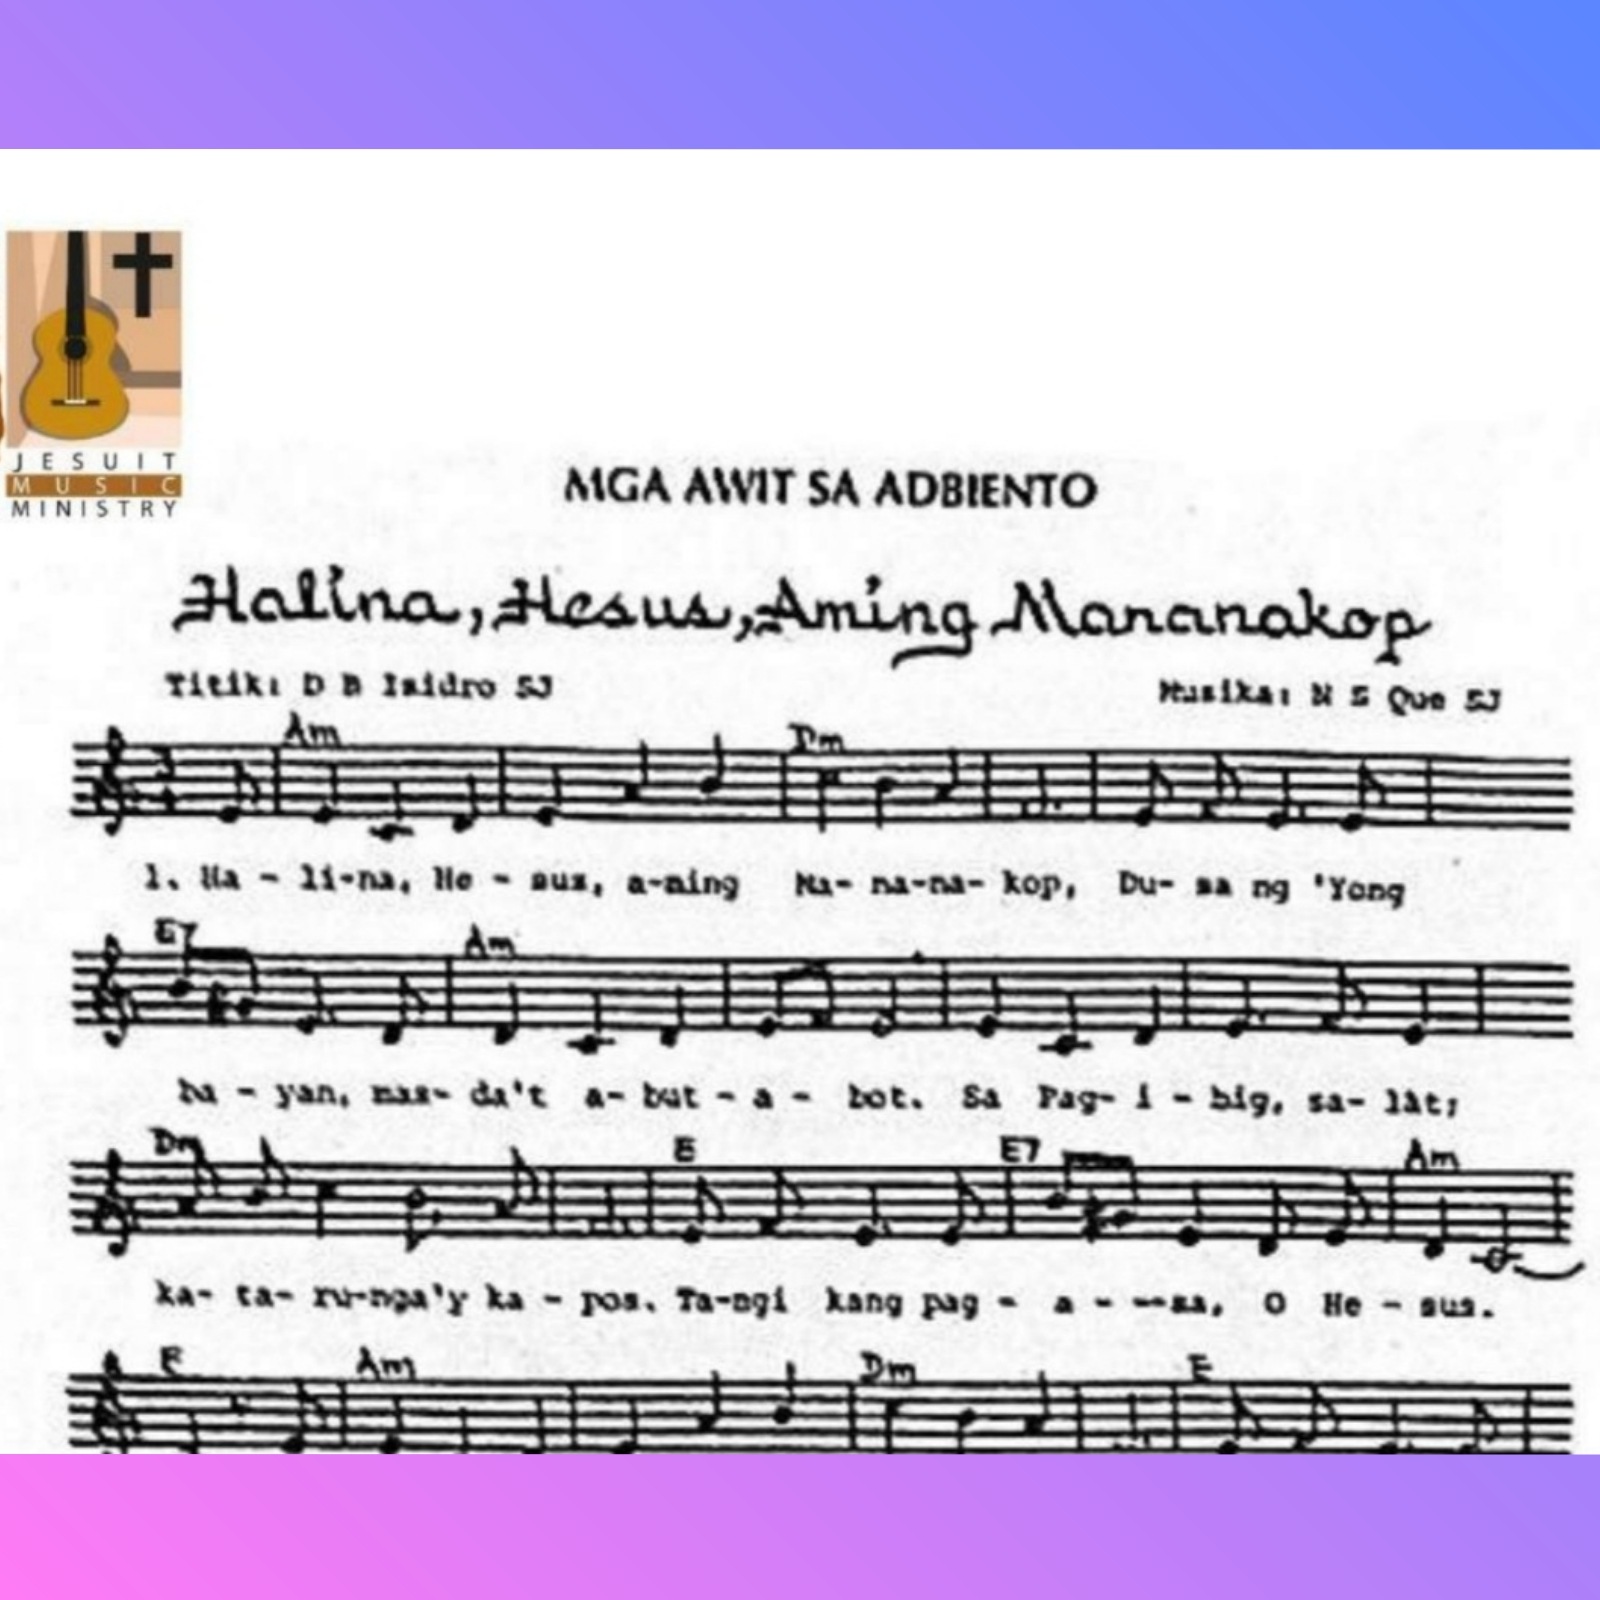 HALINA HESUS AMING MANANAKOP – Music Sheet